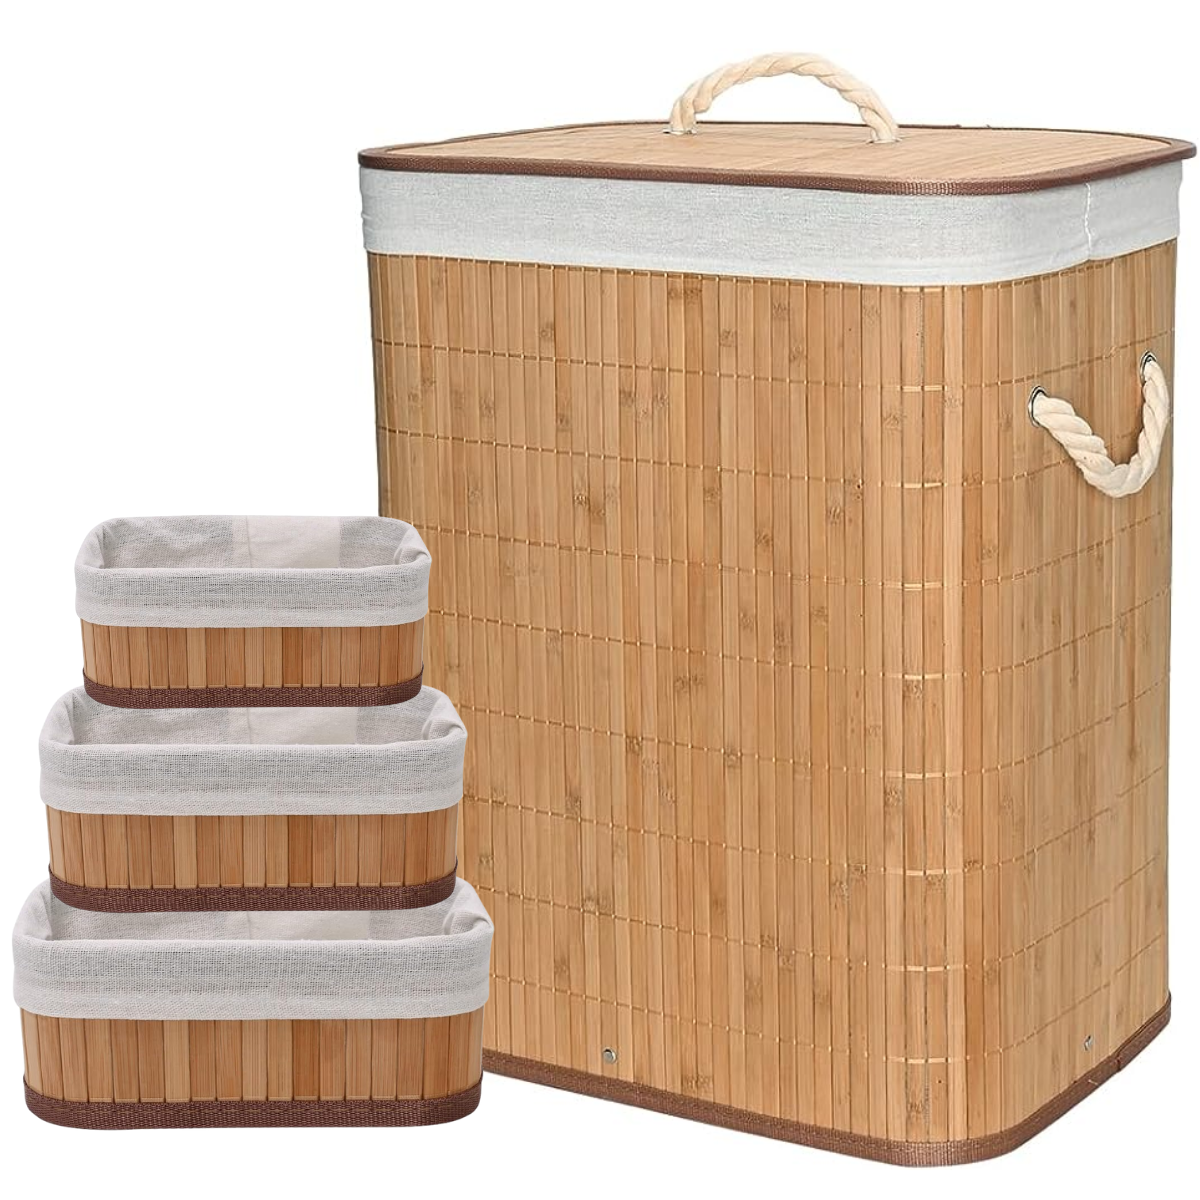 Kit Cestos de Fibra Natural Bambu com Forro Retangular Cesto Forrado Roupa Suja Organização Banheiro - 1